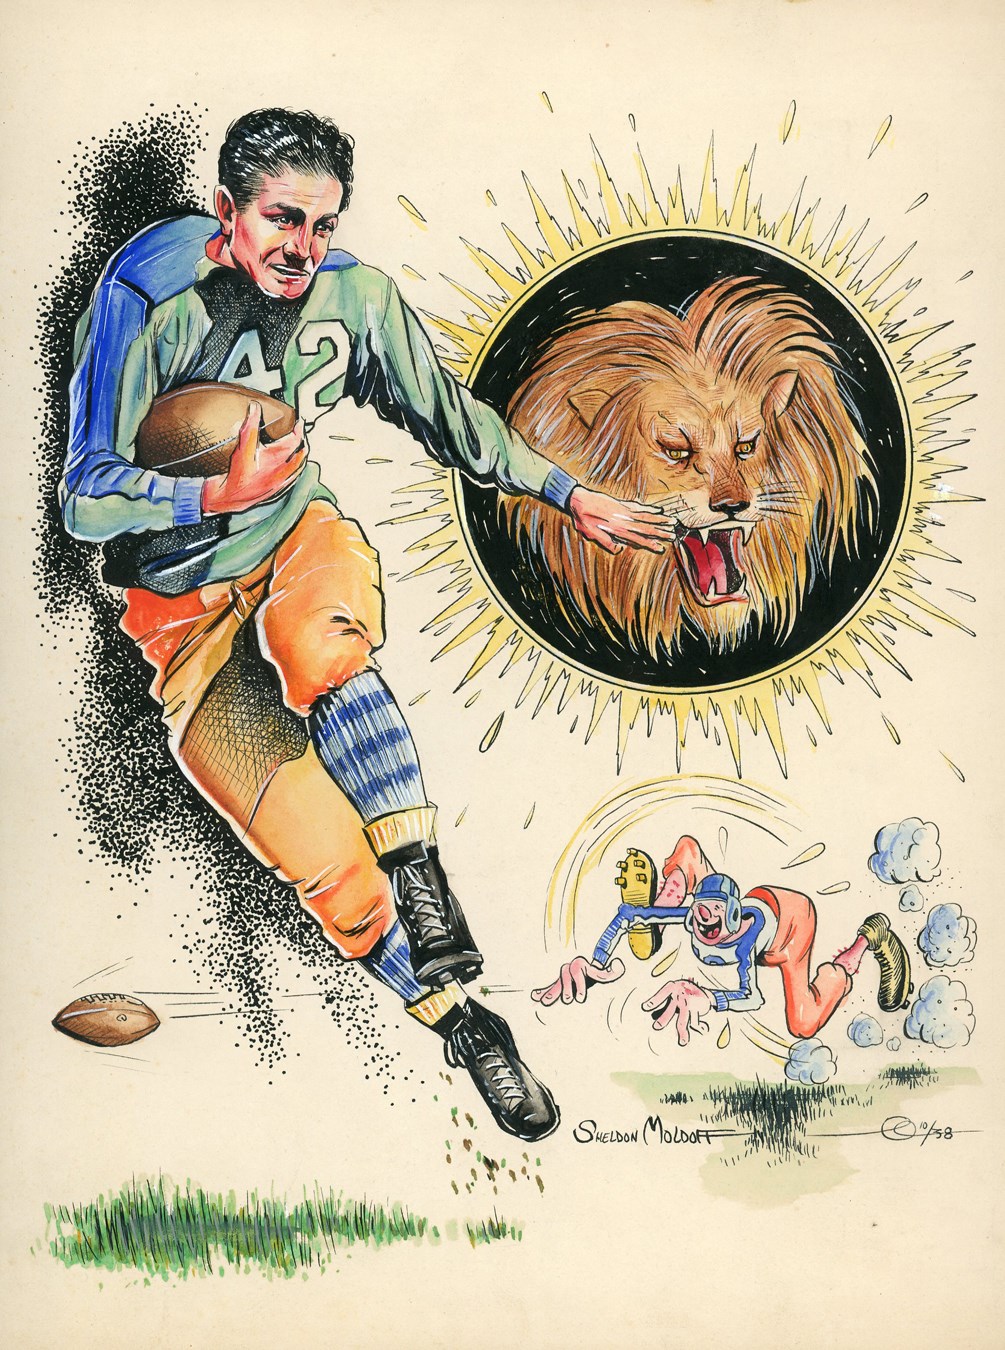 Sports Fine Art - 1938 Detroit Lions Pen & Ink Illustration by Early Batman Artist Sheldon Moldoff